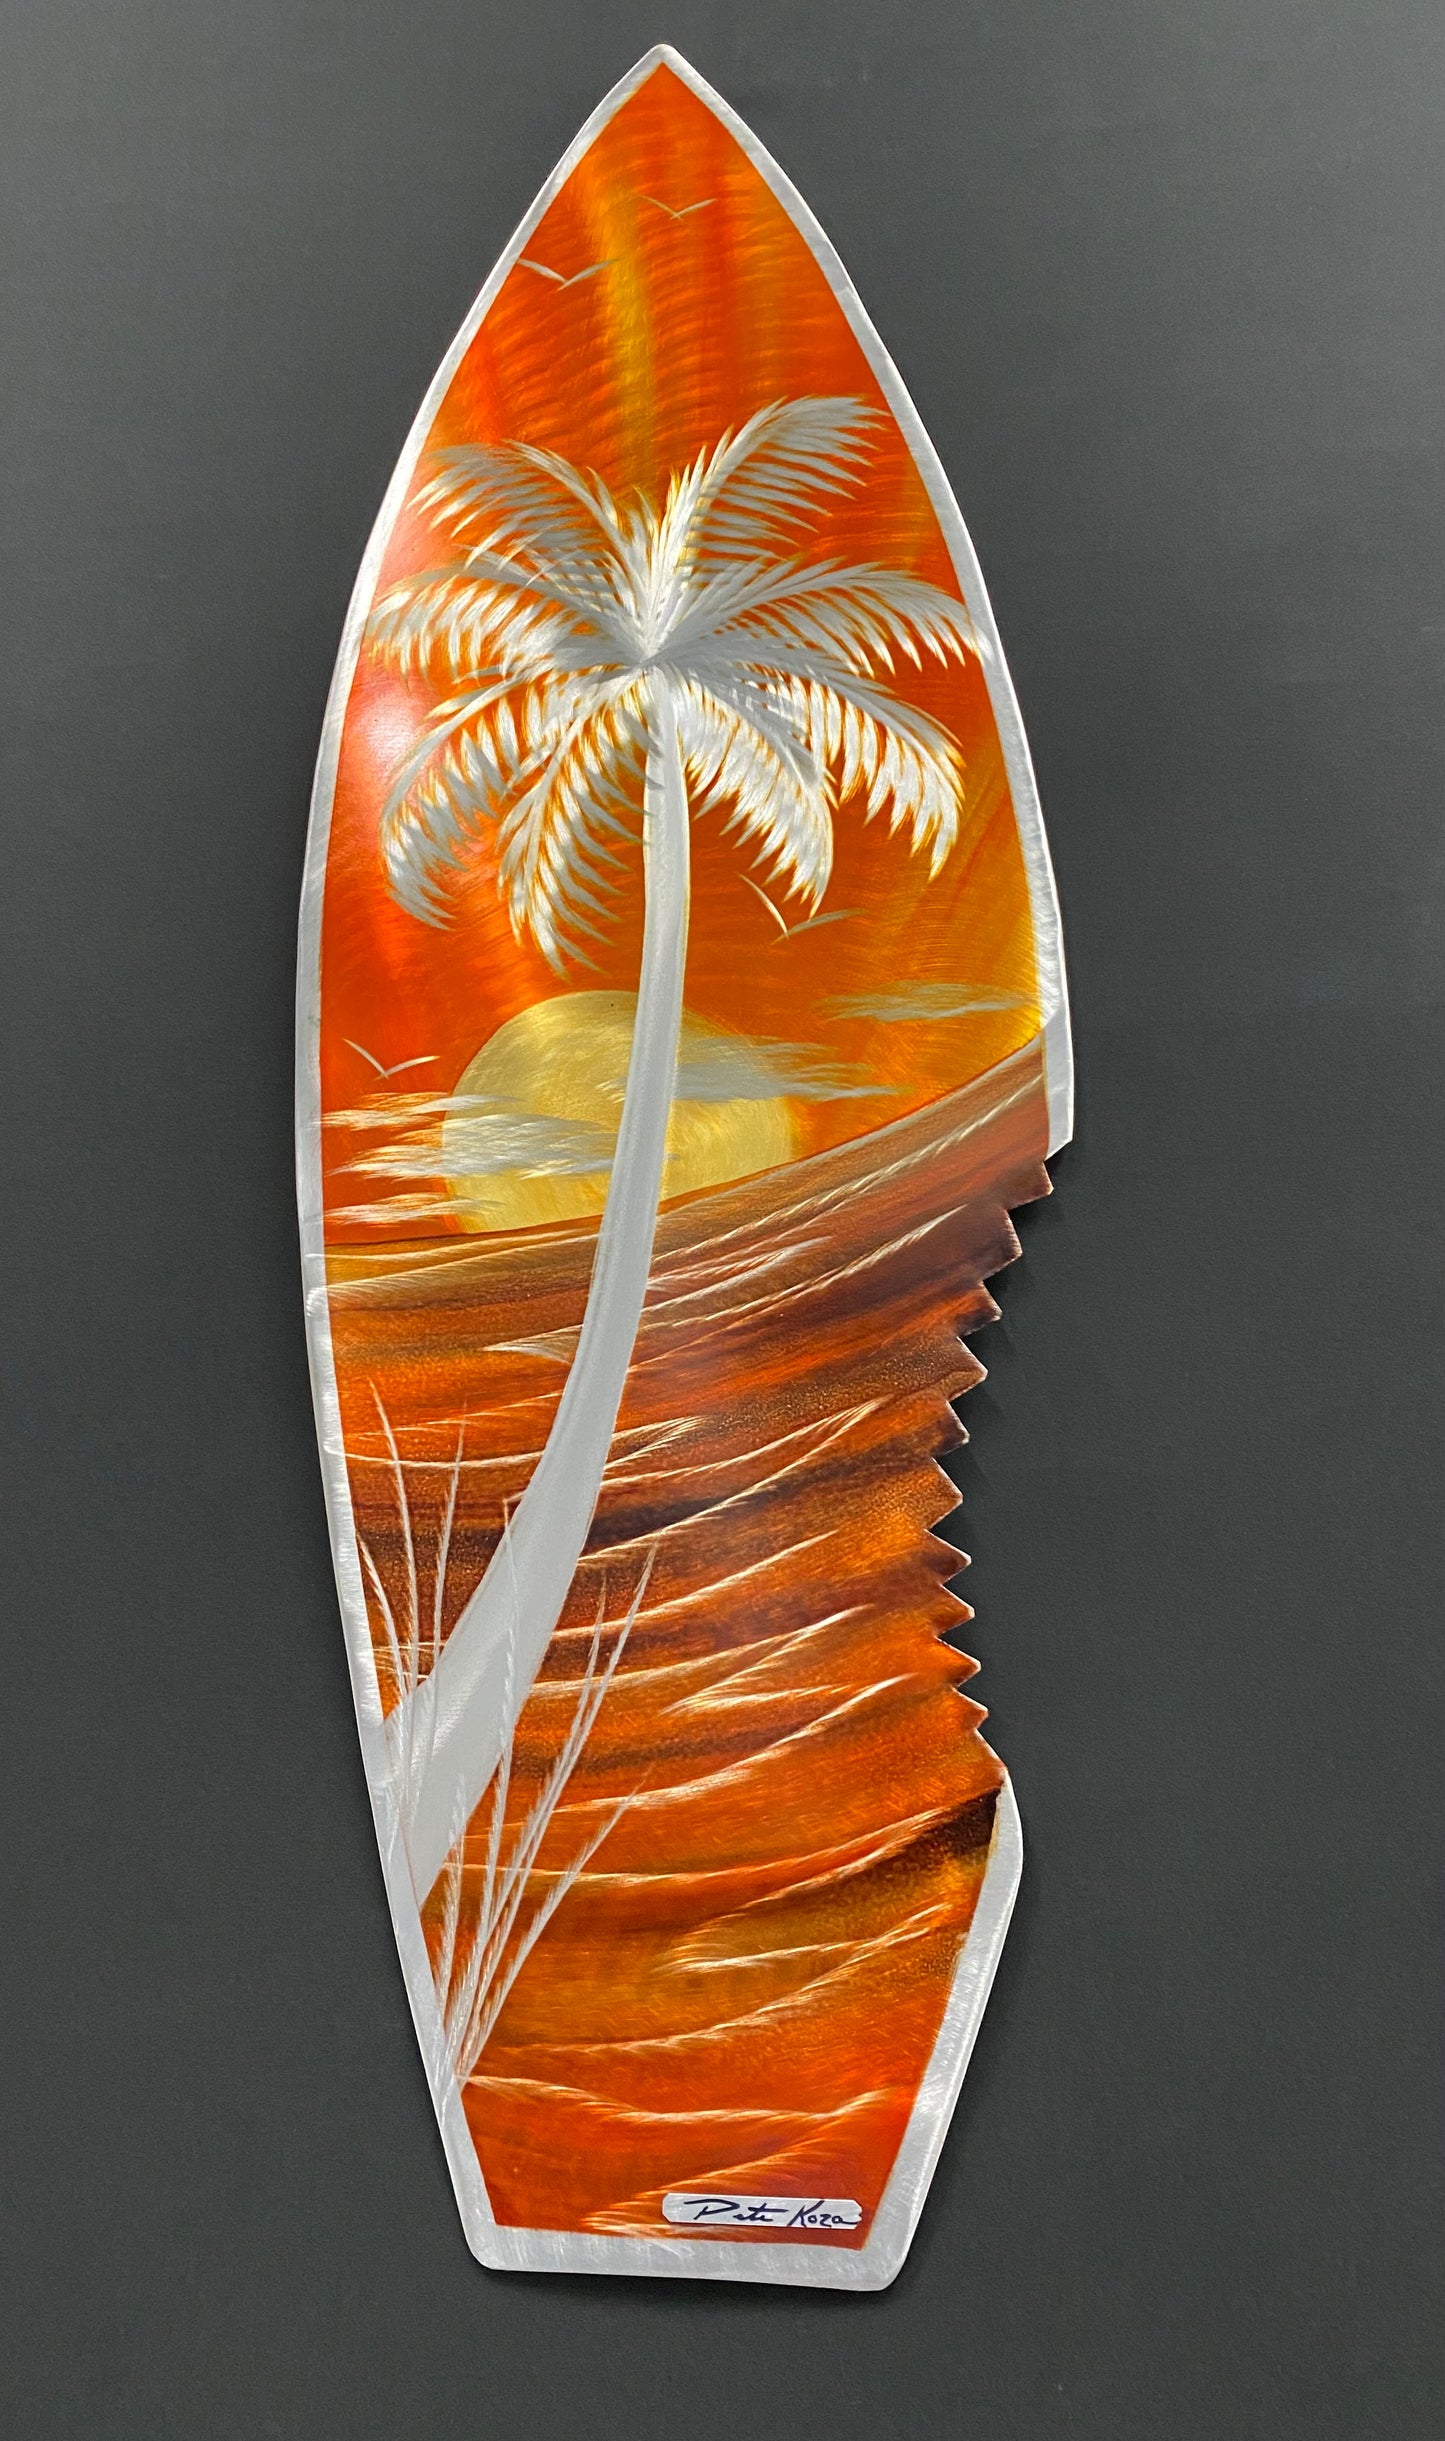 Sharkbite Surfboard Sunblast Orange PETE KOZA METAL ART